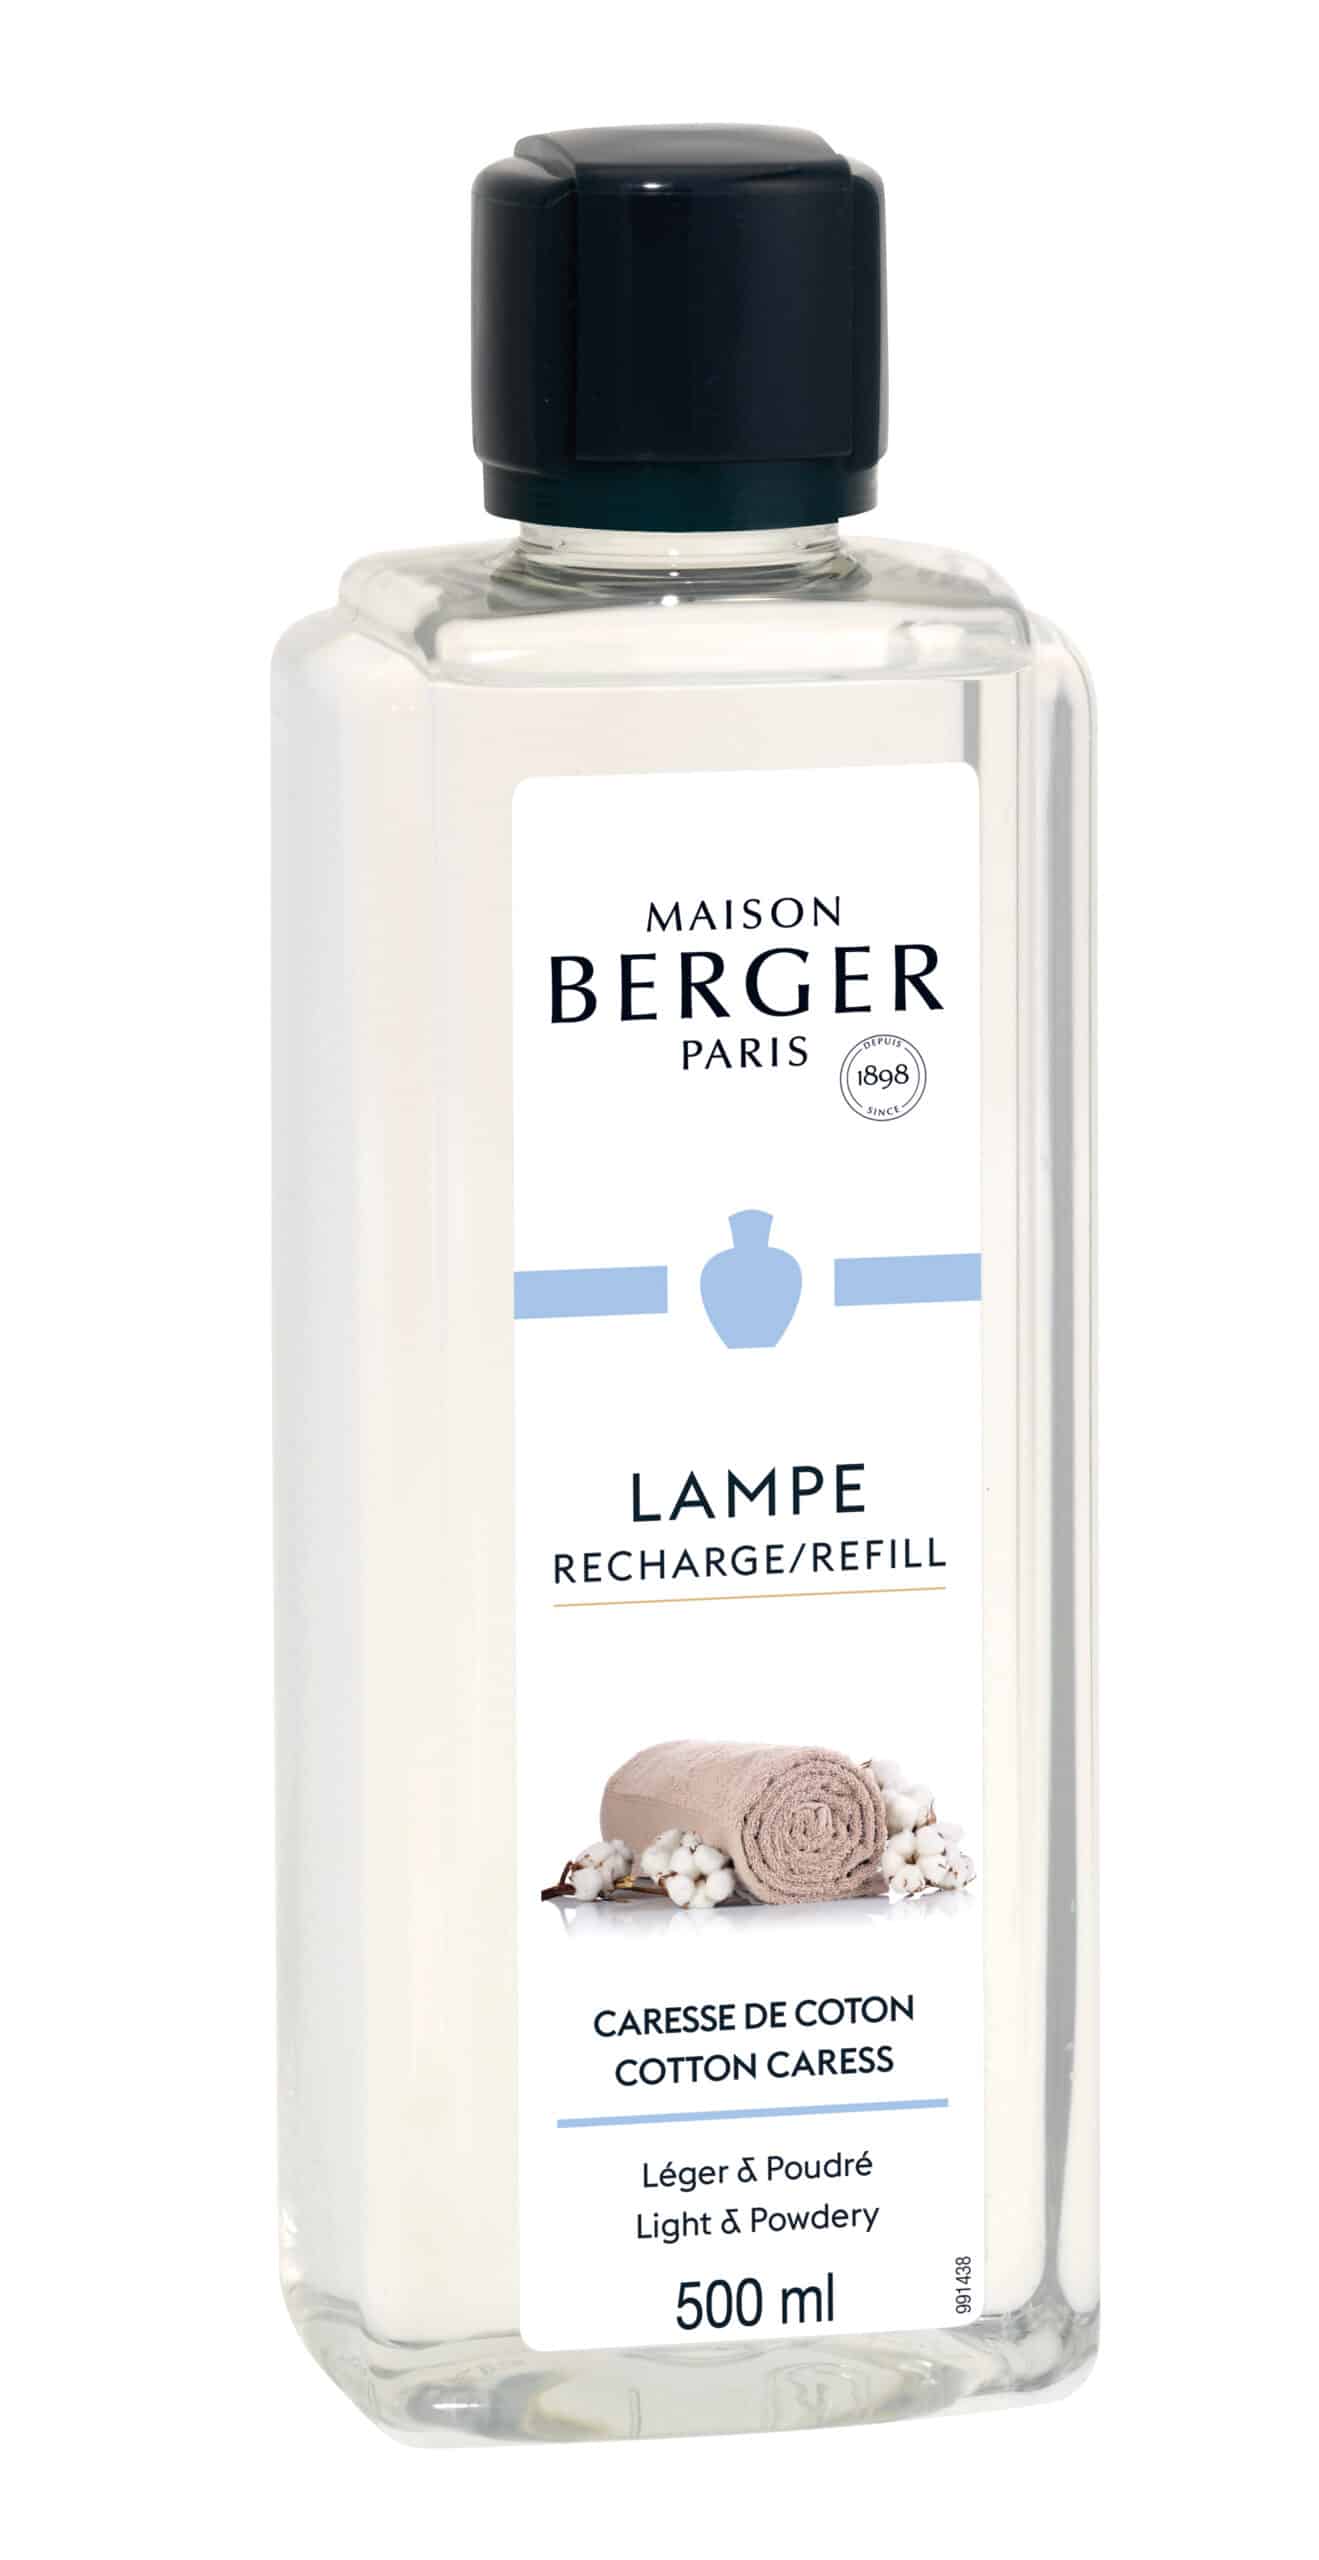 Maison Berger Paris - Parfum Caresse de Coton - 500 ml